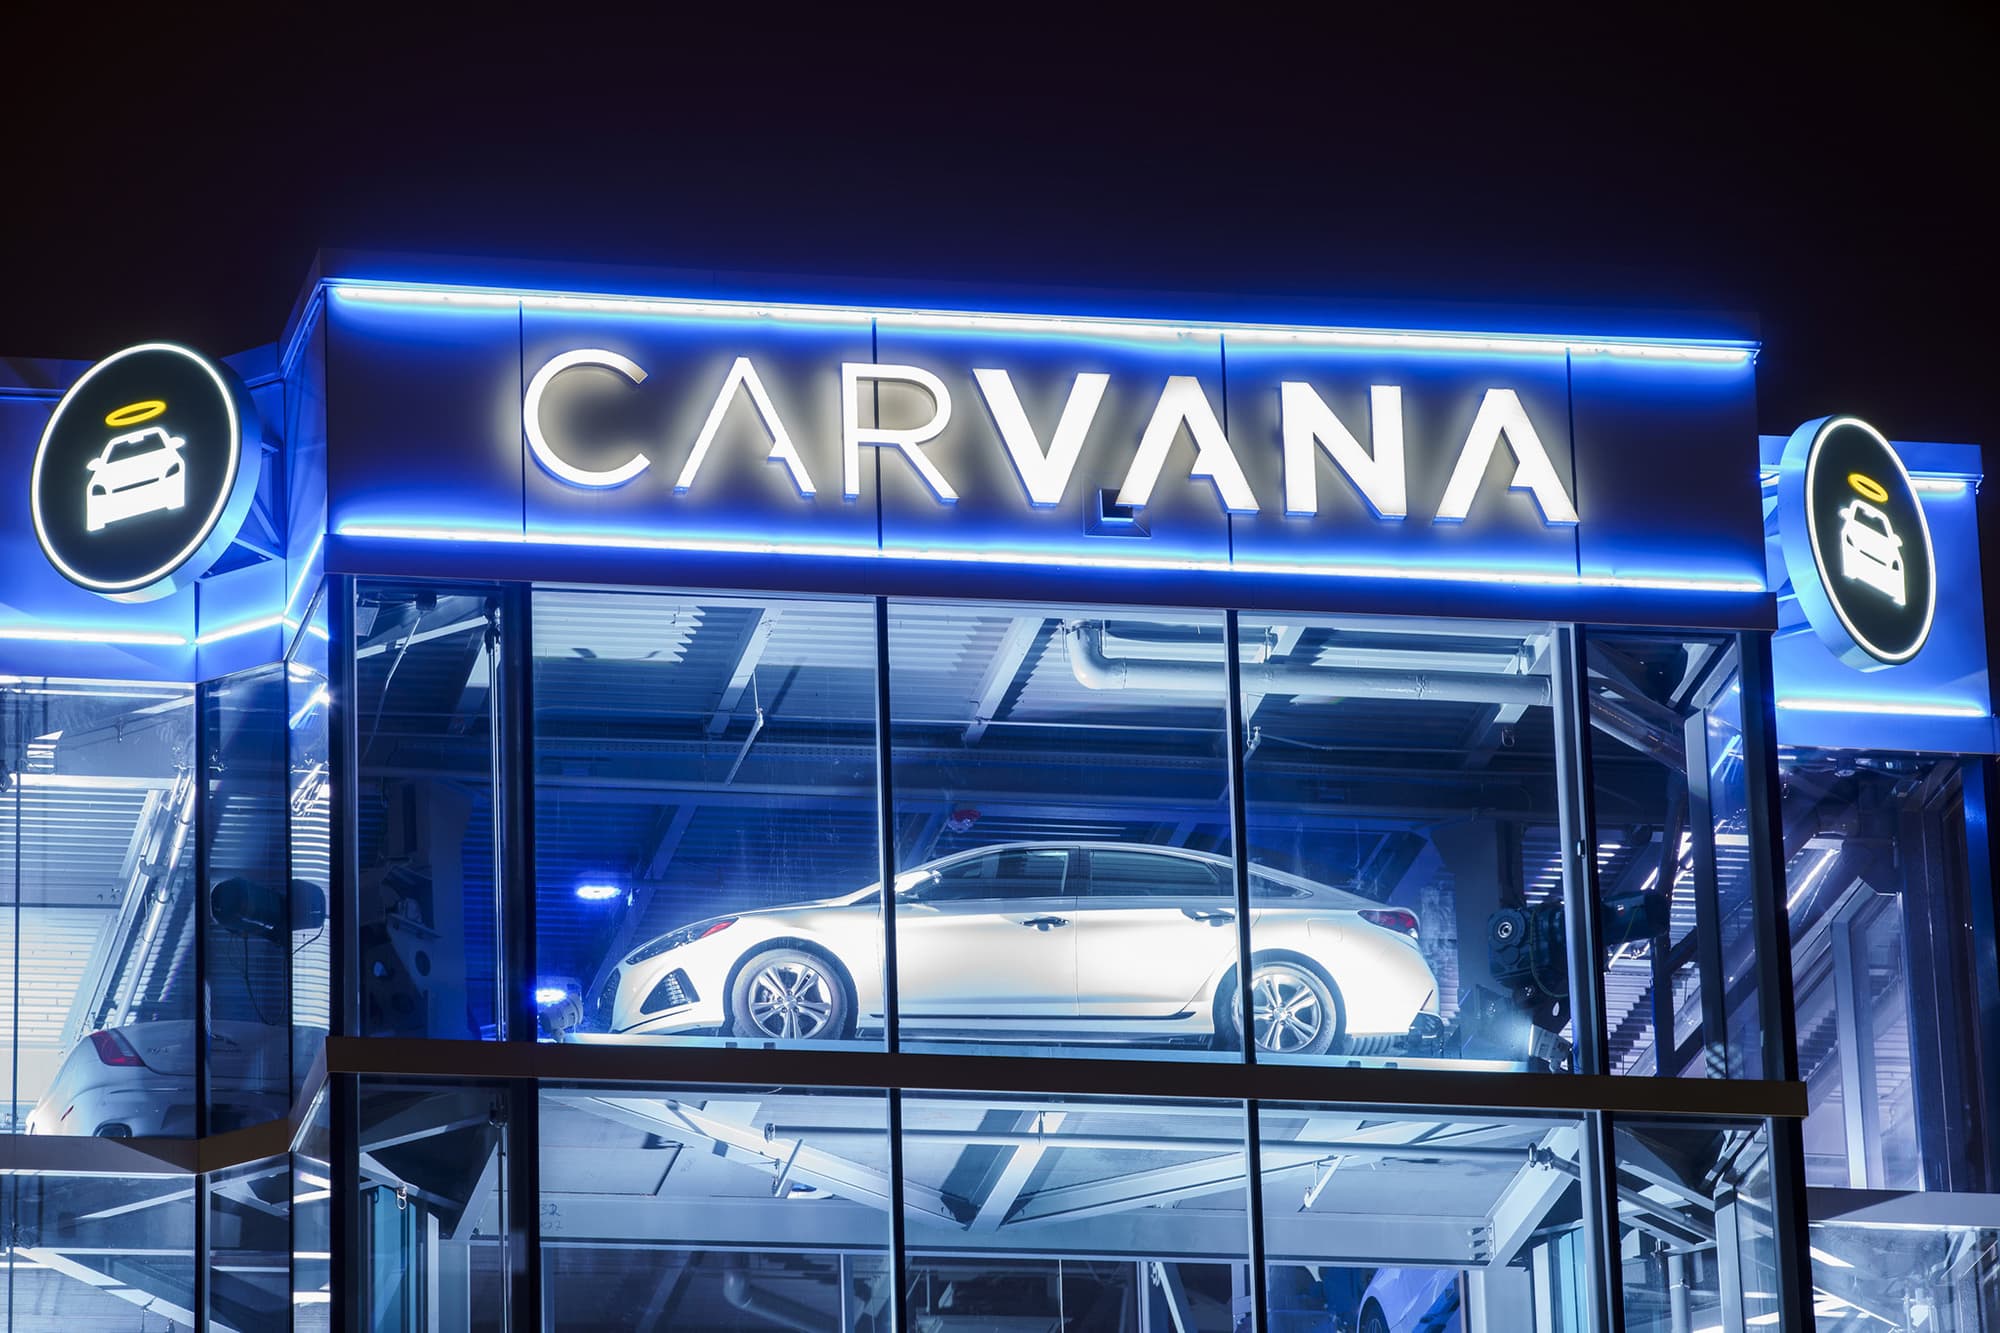 Die Anteile von Carvana stiegen im Rahmen des Schuldenabbauabkommens um 1,2 Milliarden US-Dollar